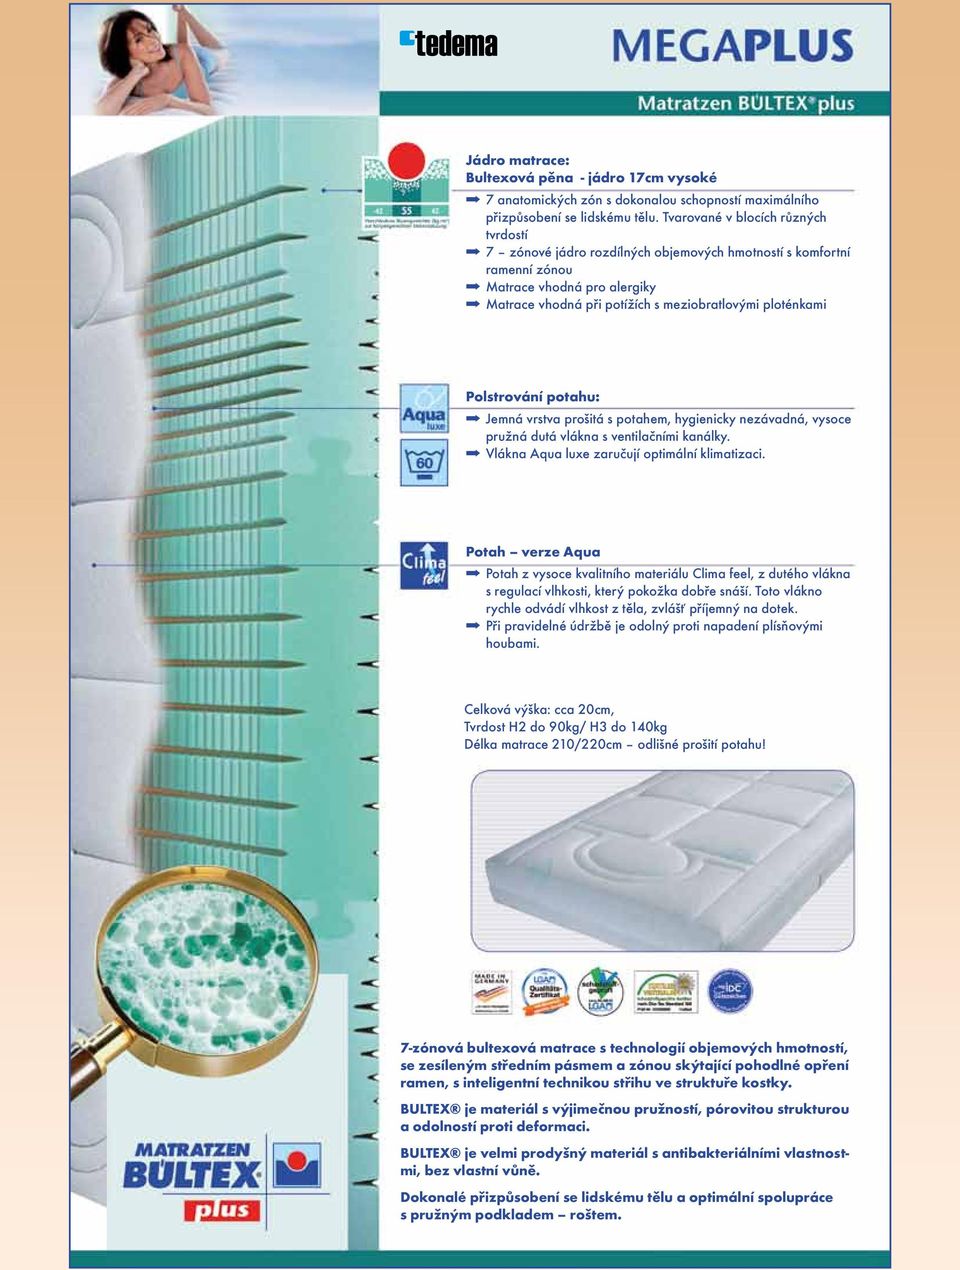 Polstrování potahu: Jemná vrstva prošitá s potahem, hygienicky nezávadná, vysoce pružná dutá vlákna s ventilačními kanálky. Vlákna Aqua luxe zaručují optimální klimatizaci.